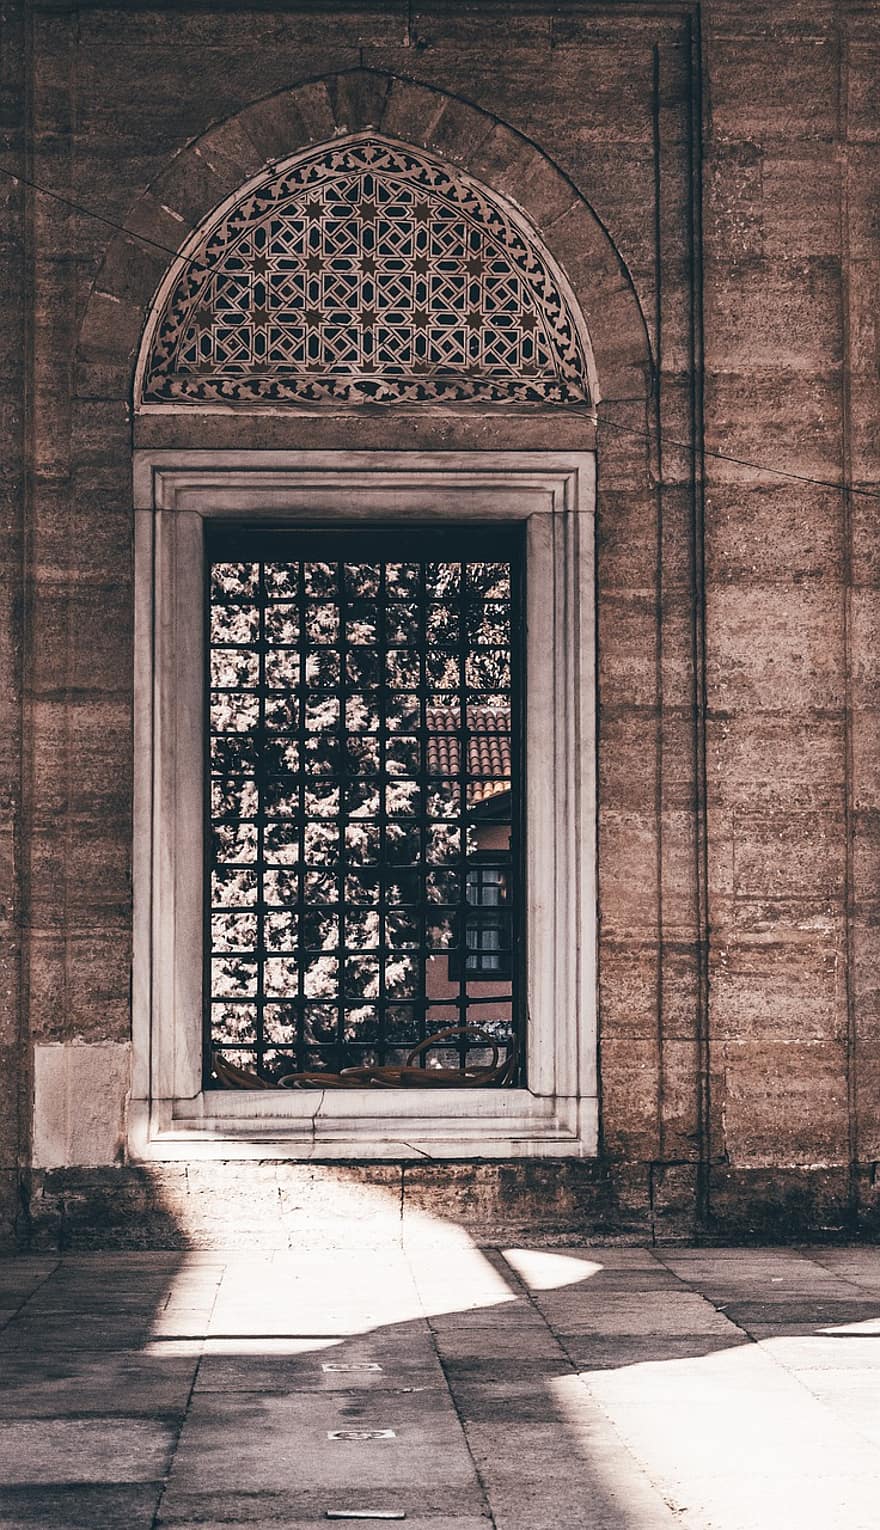 jendela, mesjid, Arsitektur, Islam, Turki, agama, tanggal, perjalanan, kota, historis